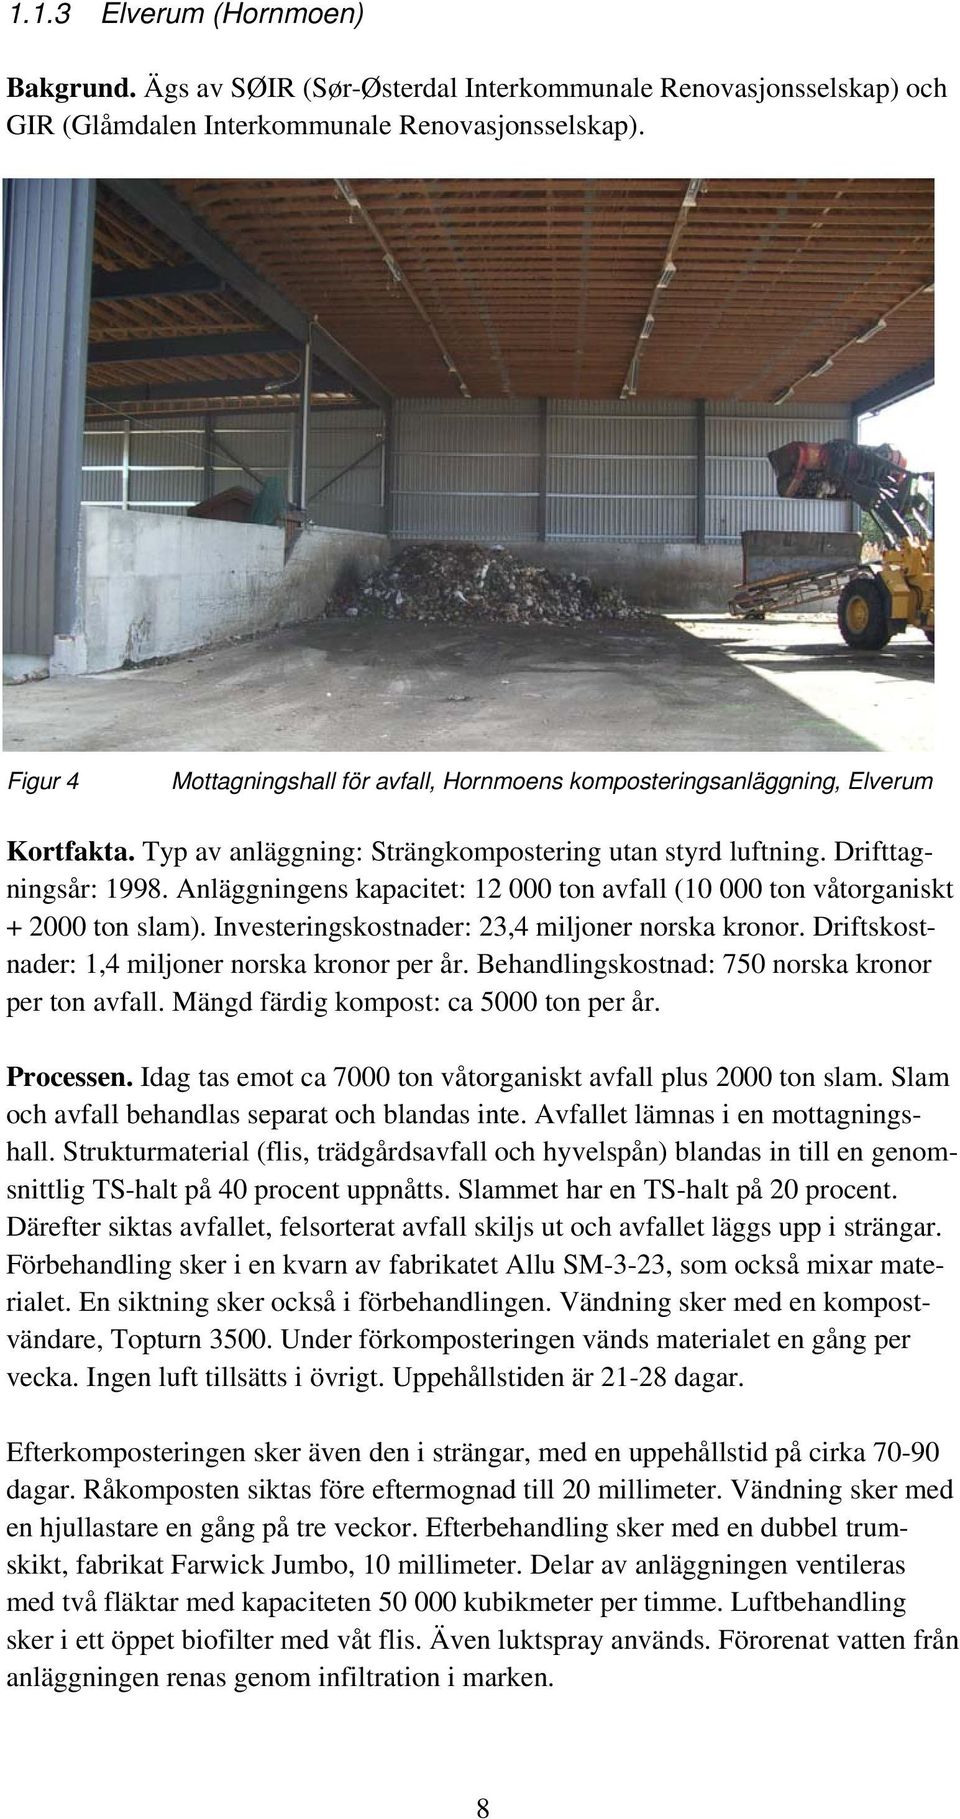 Anläggningens kapacitet: 12 000 ton avfall (10 000 ton våtorganiskt + 2000 ton slam). Investeringskostnader: 23,4 miljoner norska kronor. Driftskostnader: 1,4 miljoner norska kronor per år.